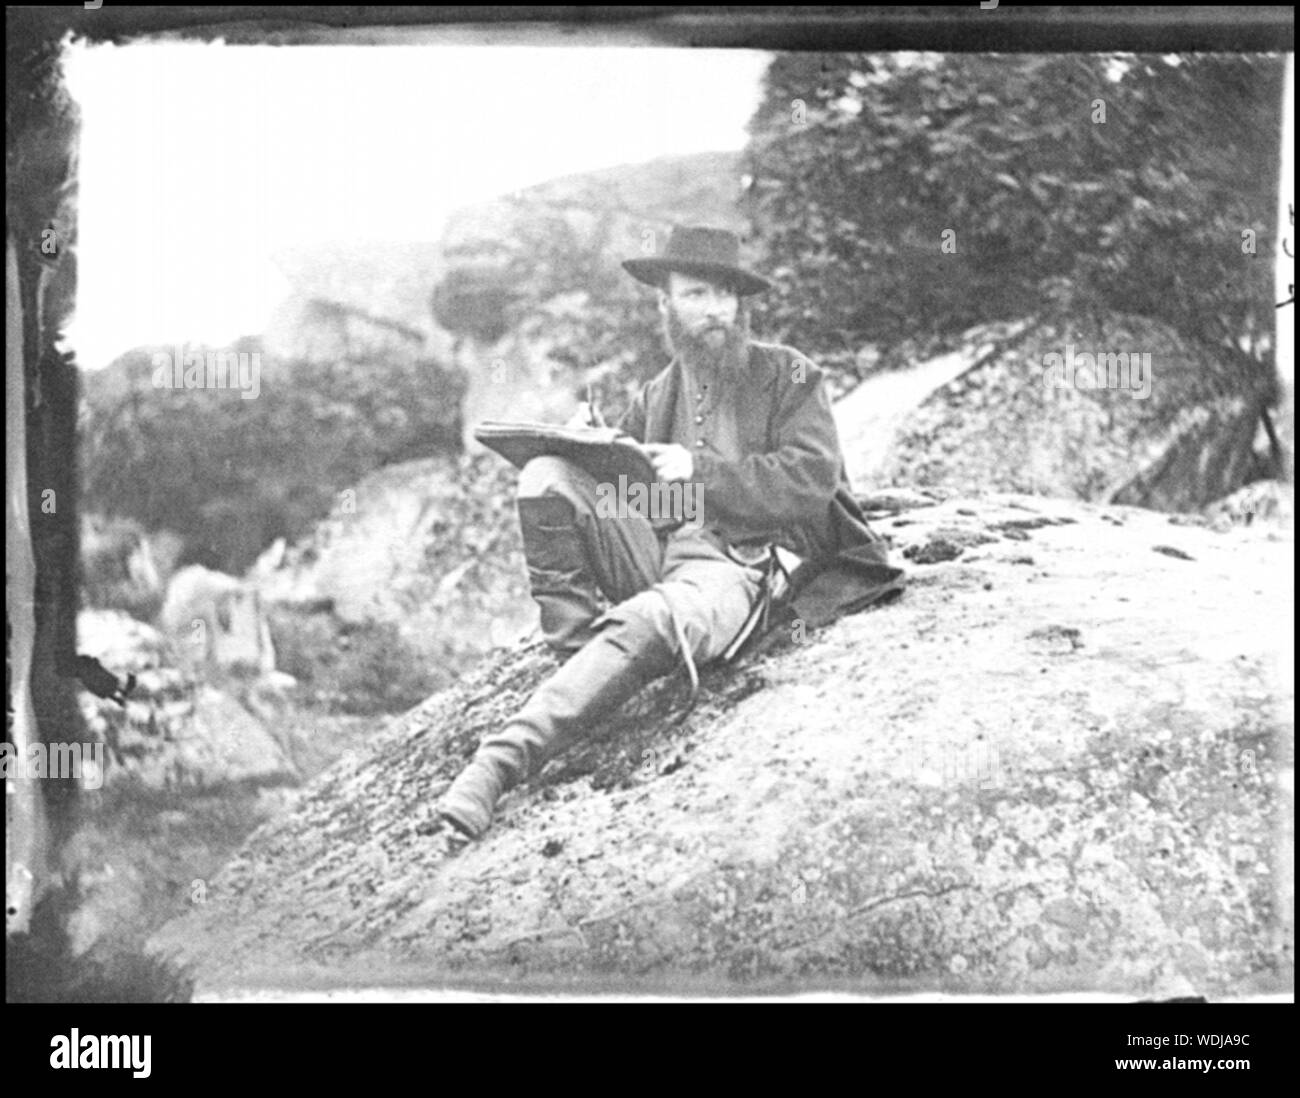 Gettysburg, Pennsylvanie R. Alfred Waud, artiste de Harper's Weekly, esquisse sur battlefield Résumé : Guerre civile sélectionné des photographies, 1861-1865 Banque D'Images